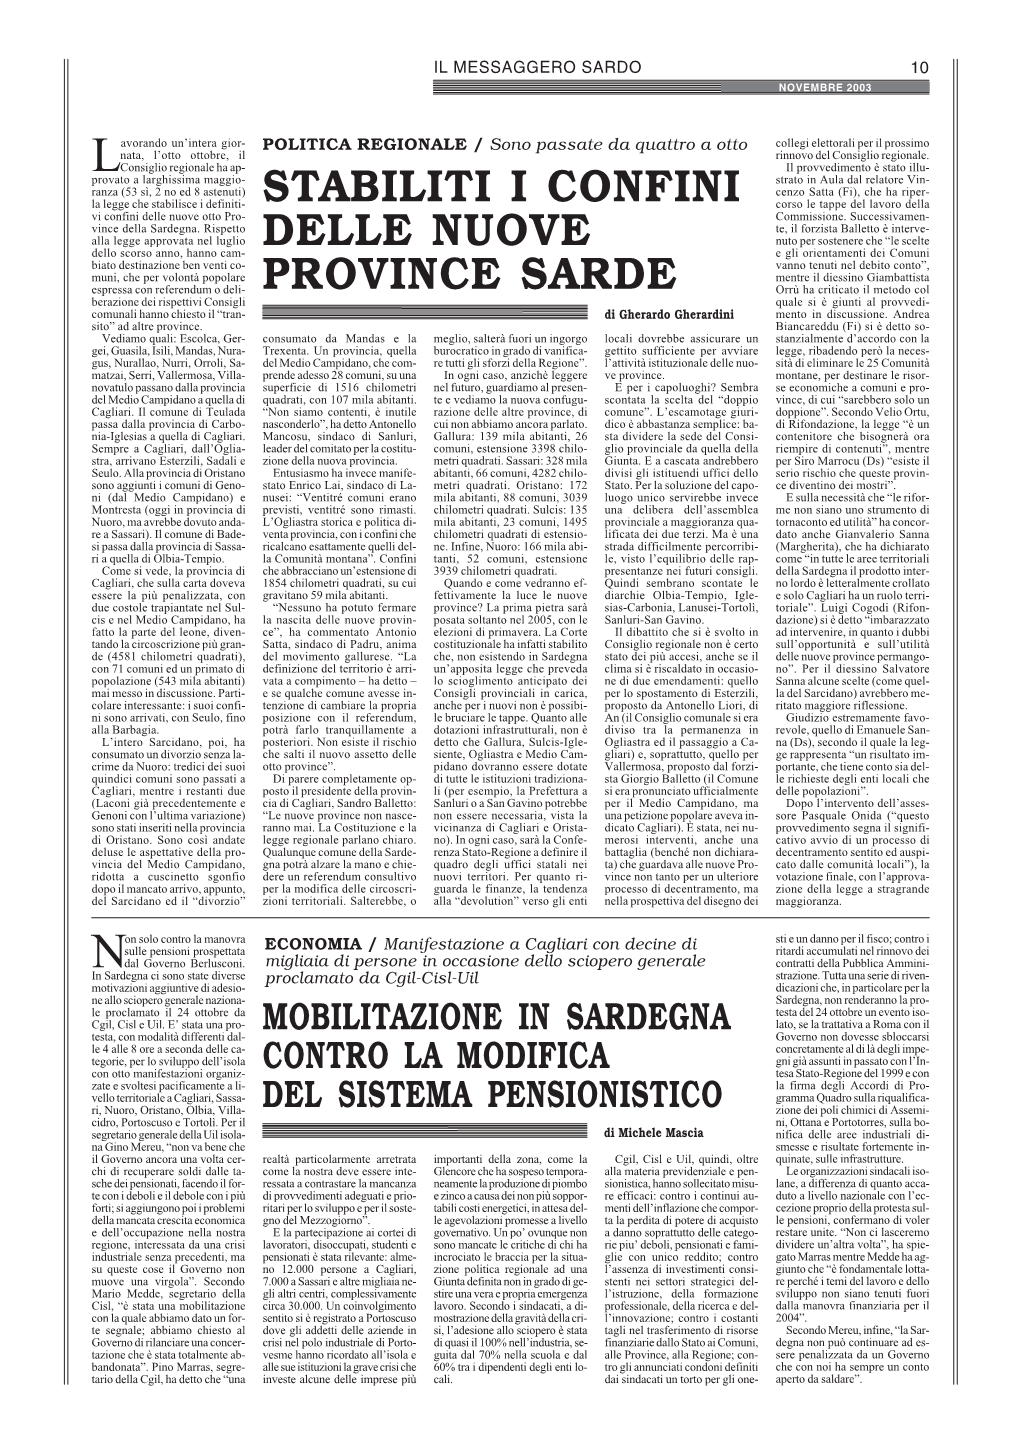 Stabiliti I Confini Delle Nuove Province Sarde